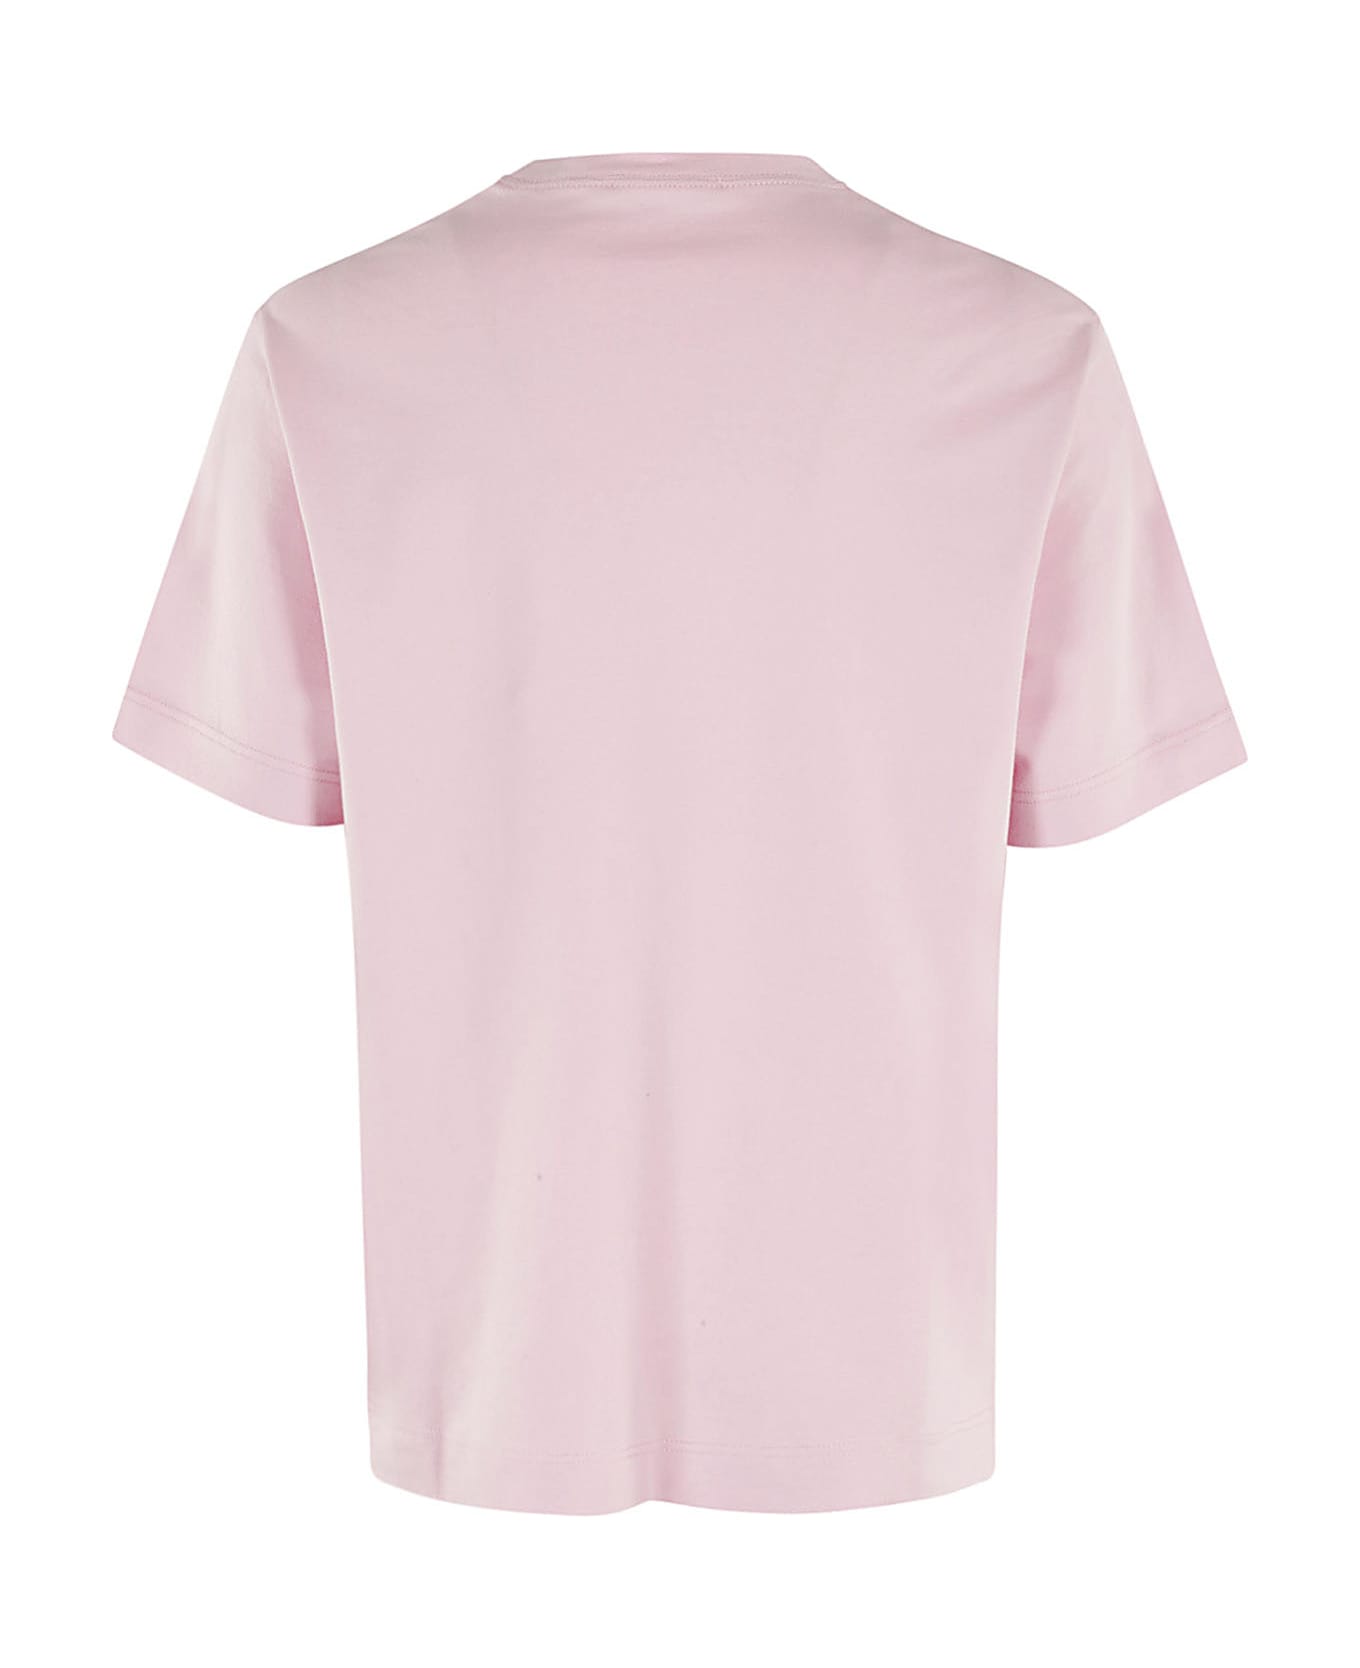 Circolo 1901 T Shirt Piquet - Fard Tシャツ